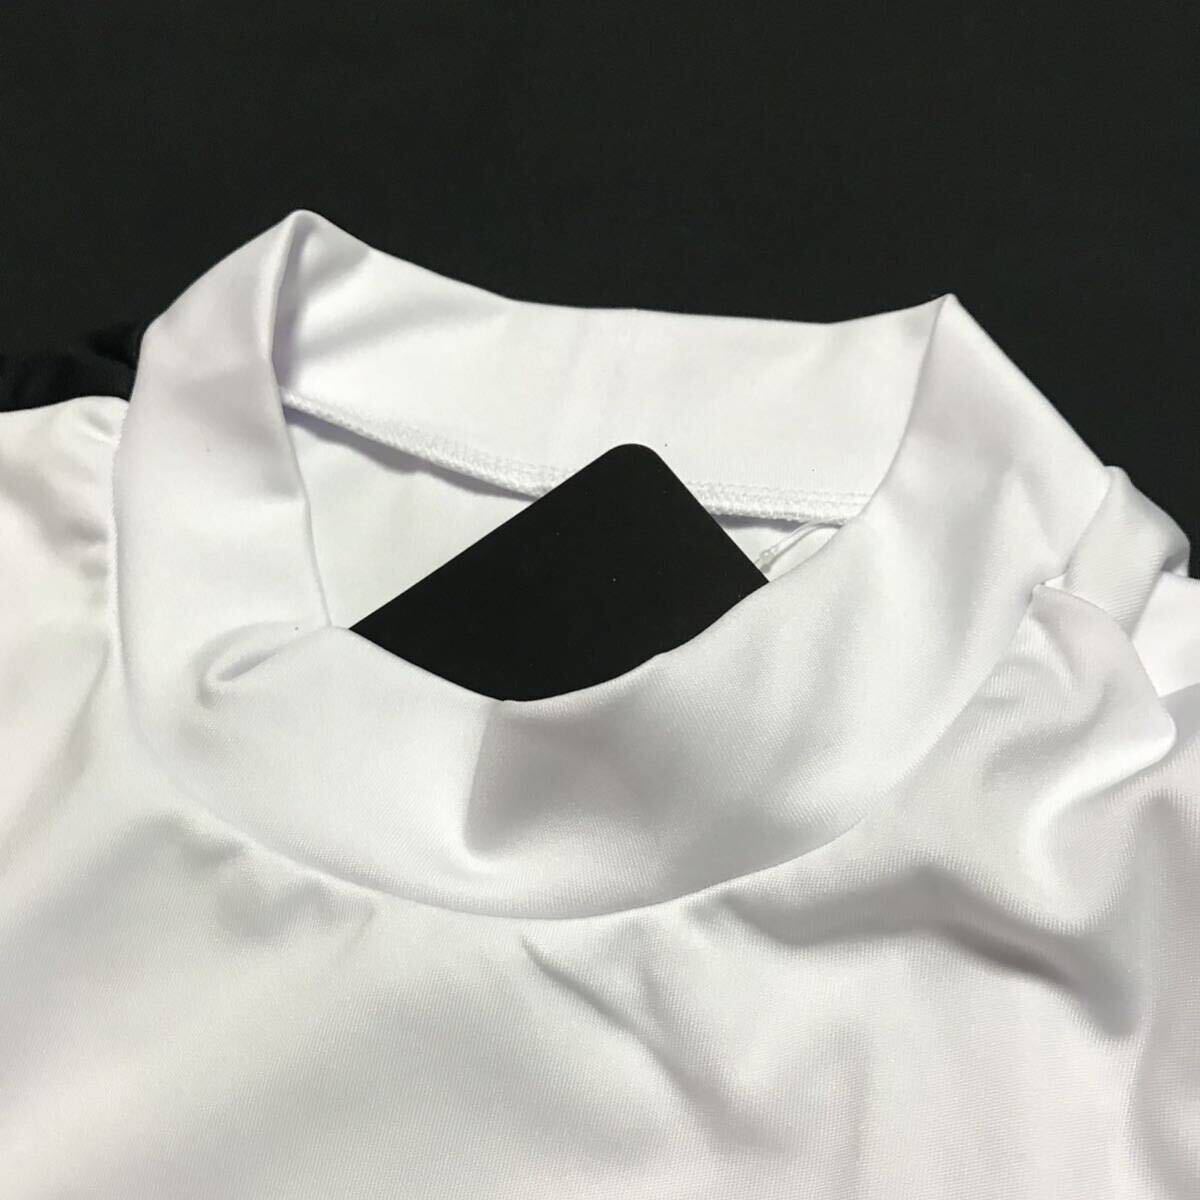 ^K097 новый товар [ мужской LL] белый чёрный filler Golf одежда рубашка с коротким рукавом весна лето mok шея рубашка 